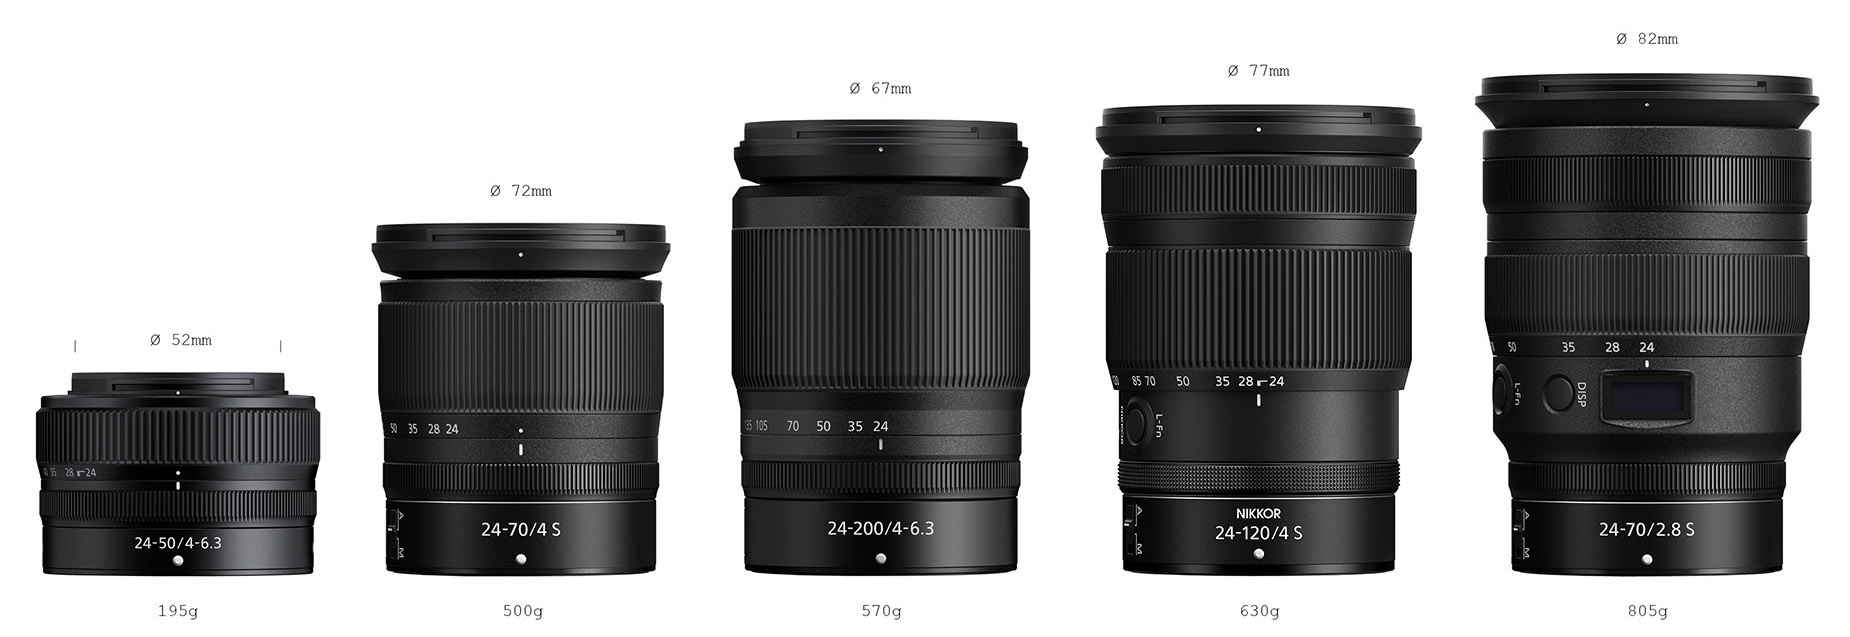 Nikon Nikkor Z 24-120mm f/4 S lens additional coverage - Nikon Rumors